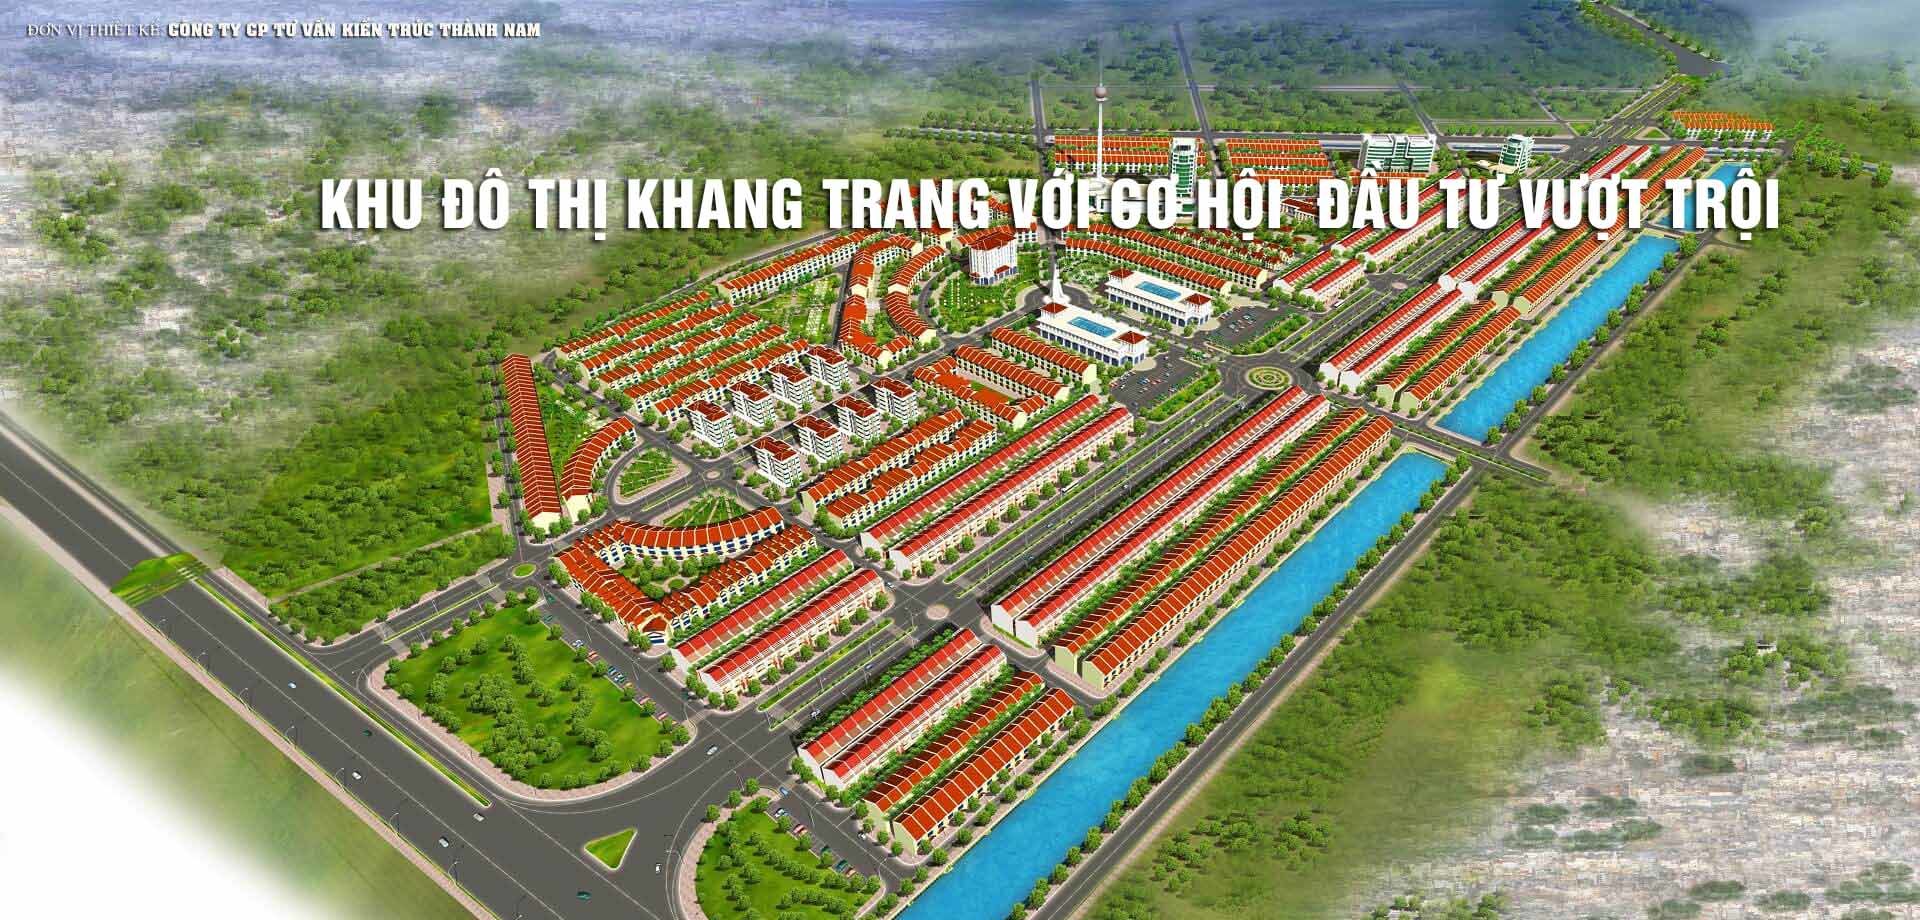 Tiến độ Dự án Thống Nhất Nam Định đang được đẩy nhanh để kịp đáp ứng kế hoạch phát triển của thành phố. Với những đầu tư to lớn và sự quyết tâm của các nhà đầu tư, Thống Nhất Nam Định sẽ trở thành một đô thị hiện đại đầy tiềm năng. Hãy xem hình để cập nhật tiến độ dự án Thống Nhất Nam Định!